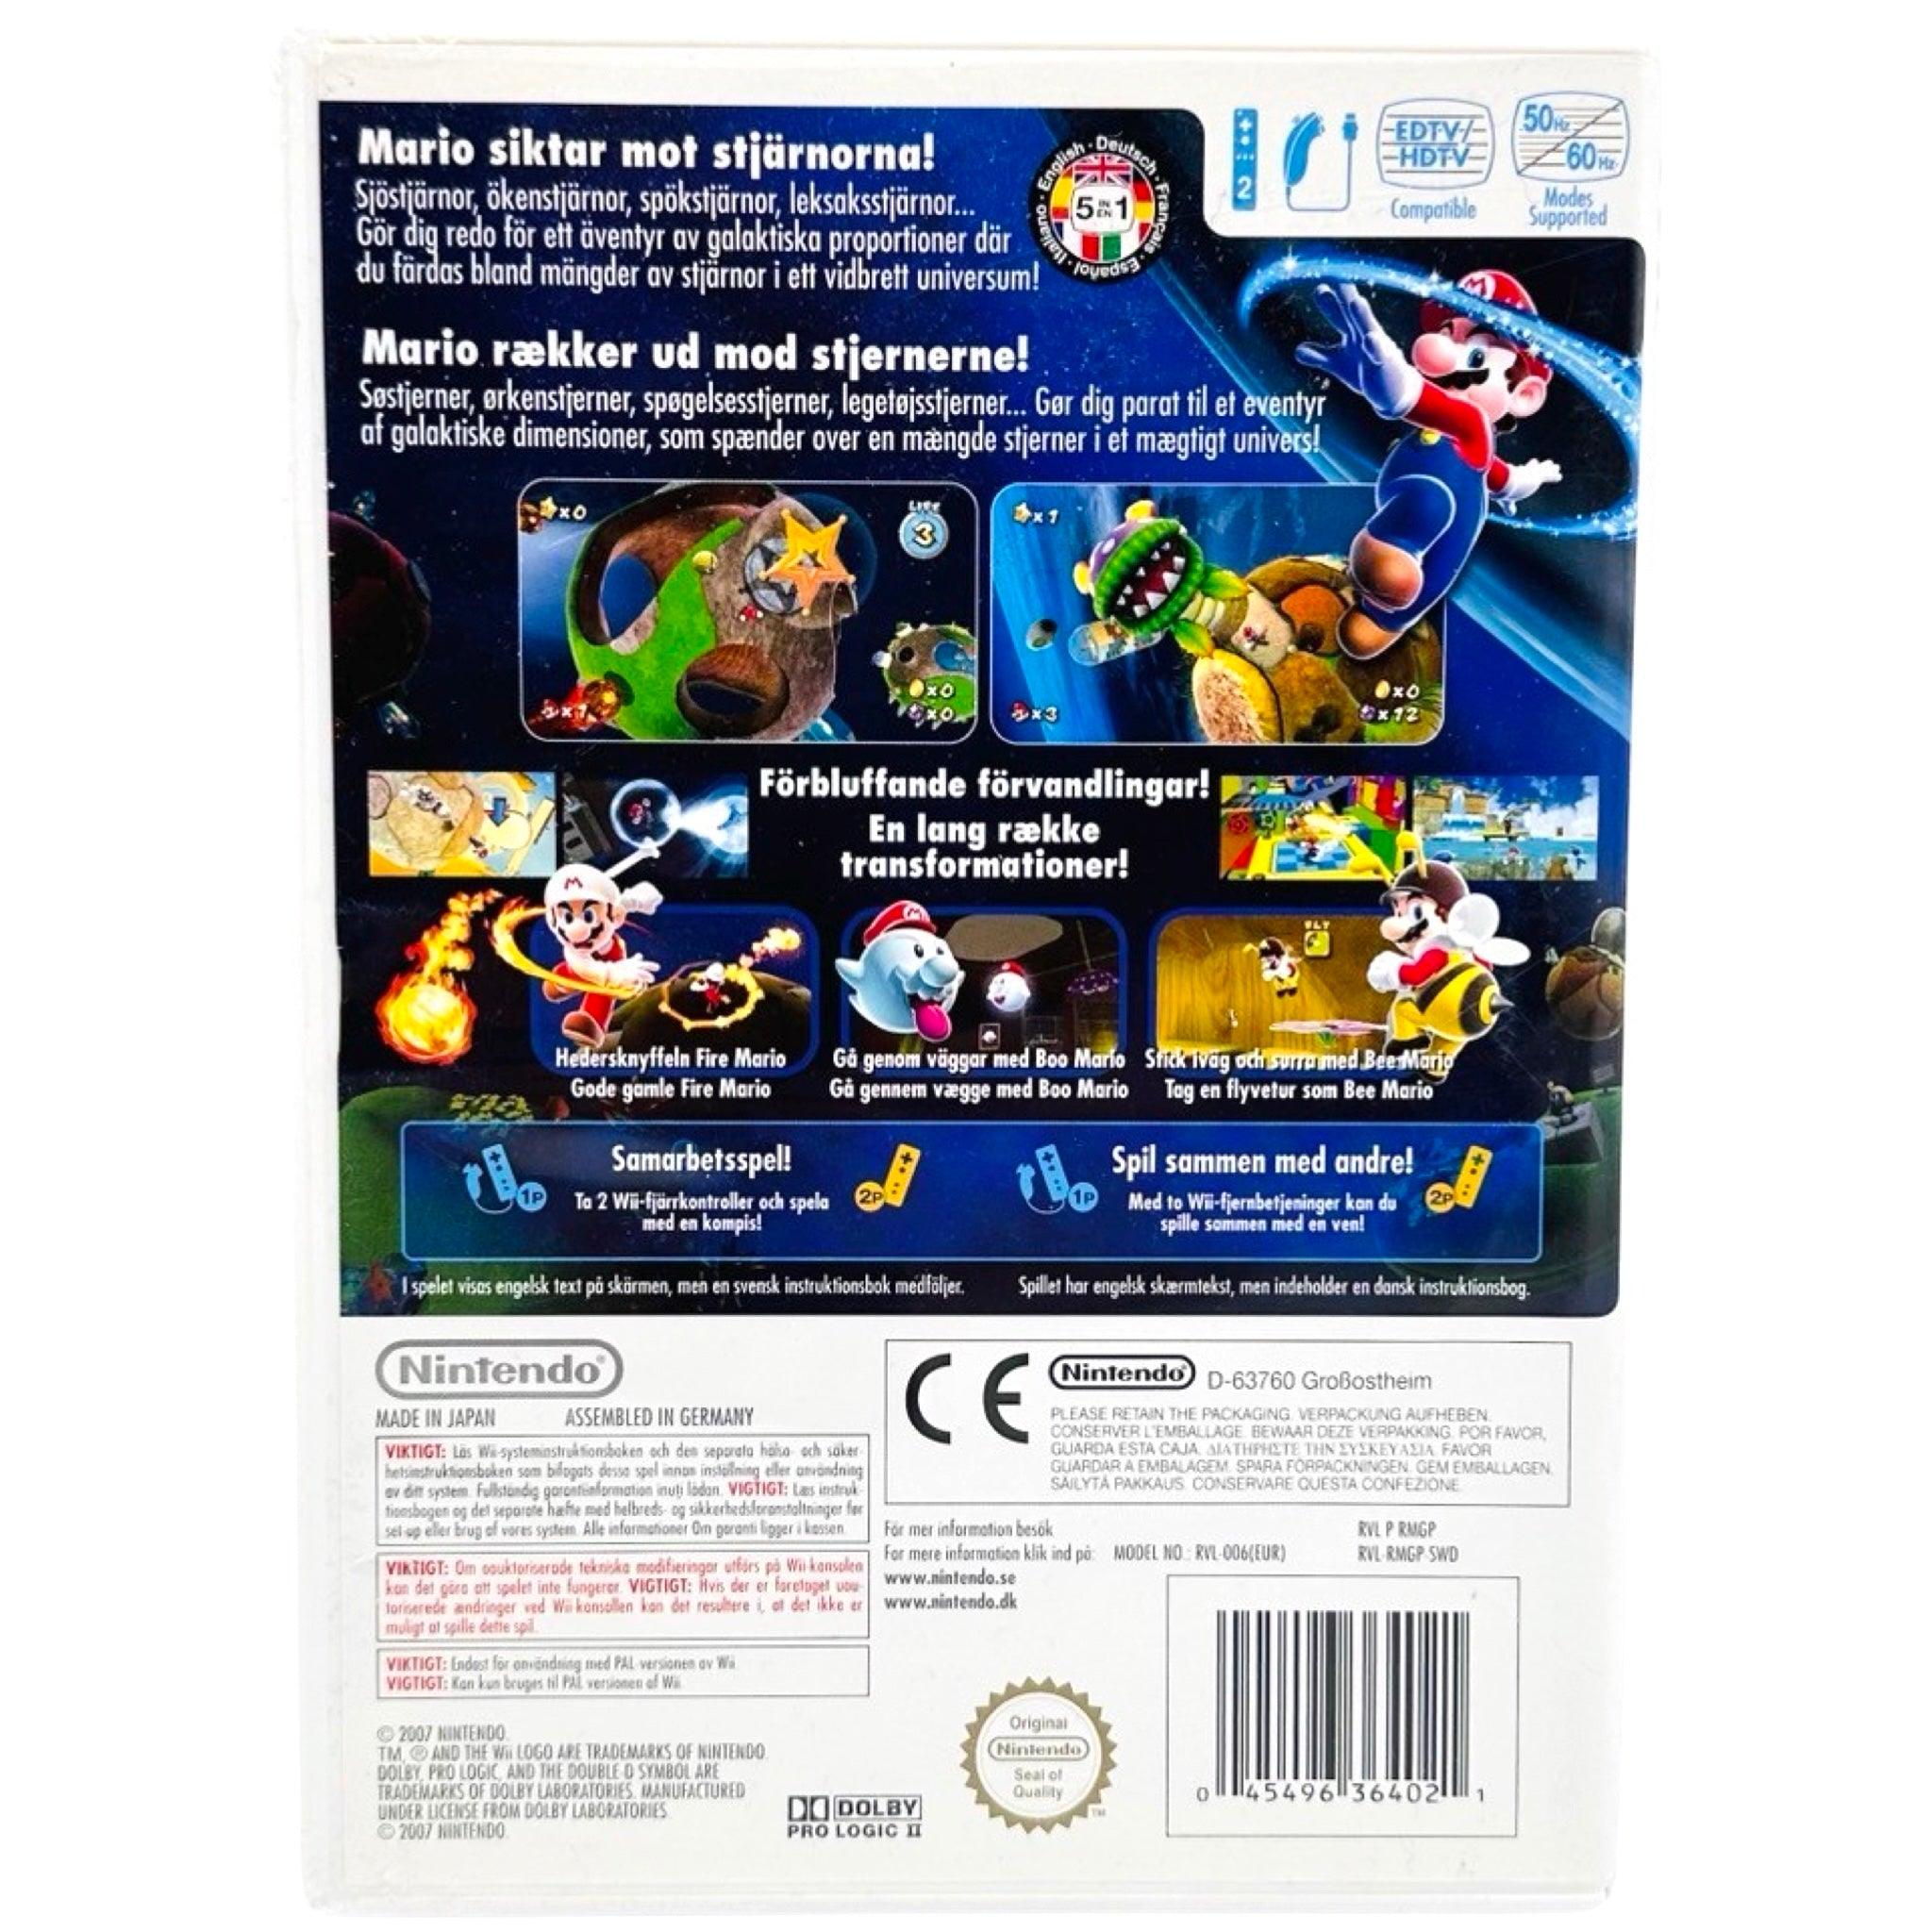 Wii: Super Mario Galaxy - RetroGaming.no